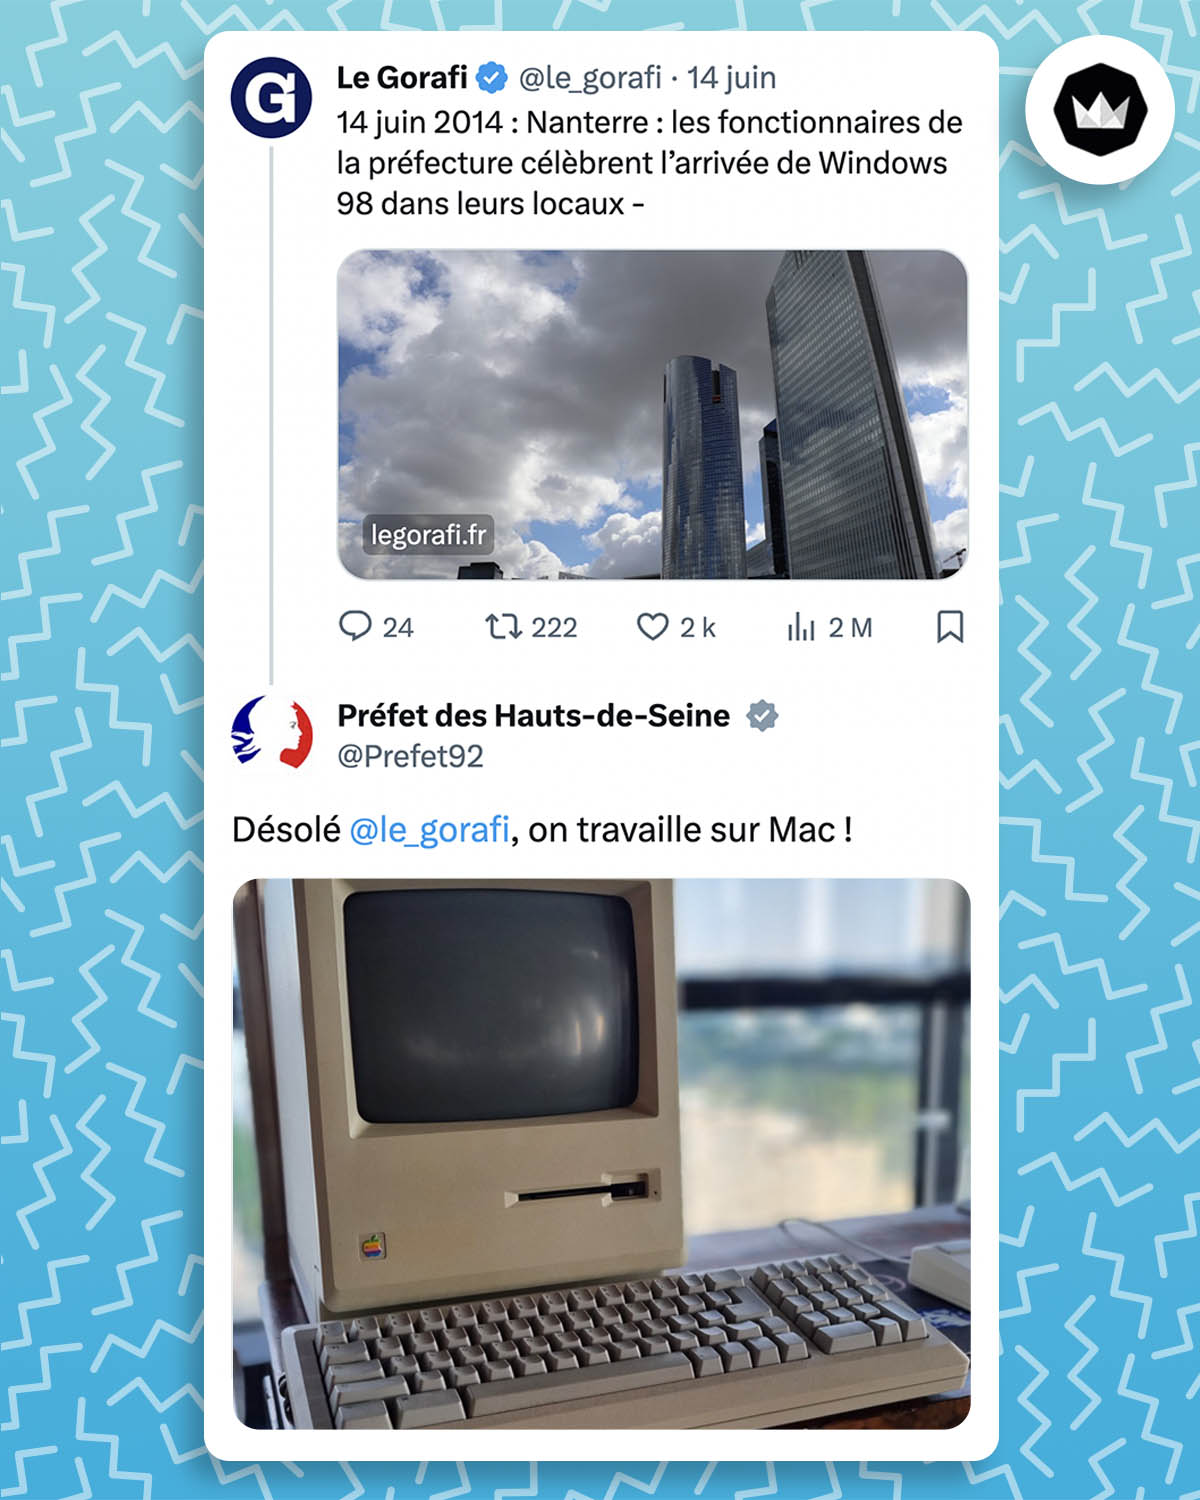 tweet du préfet du 92 : "Désolé @le_gorafi, on travaille sur Mac !" accompagné d'une image d'un vieux macintosh. Il répond à une fausse news du gorafi : "14 juin 2014 : Nanterre : les fonctionnaires de la préfecture célèbrent l’arrivée de Windows 98 dans leurs locaux" 